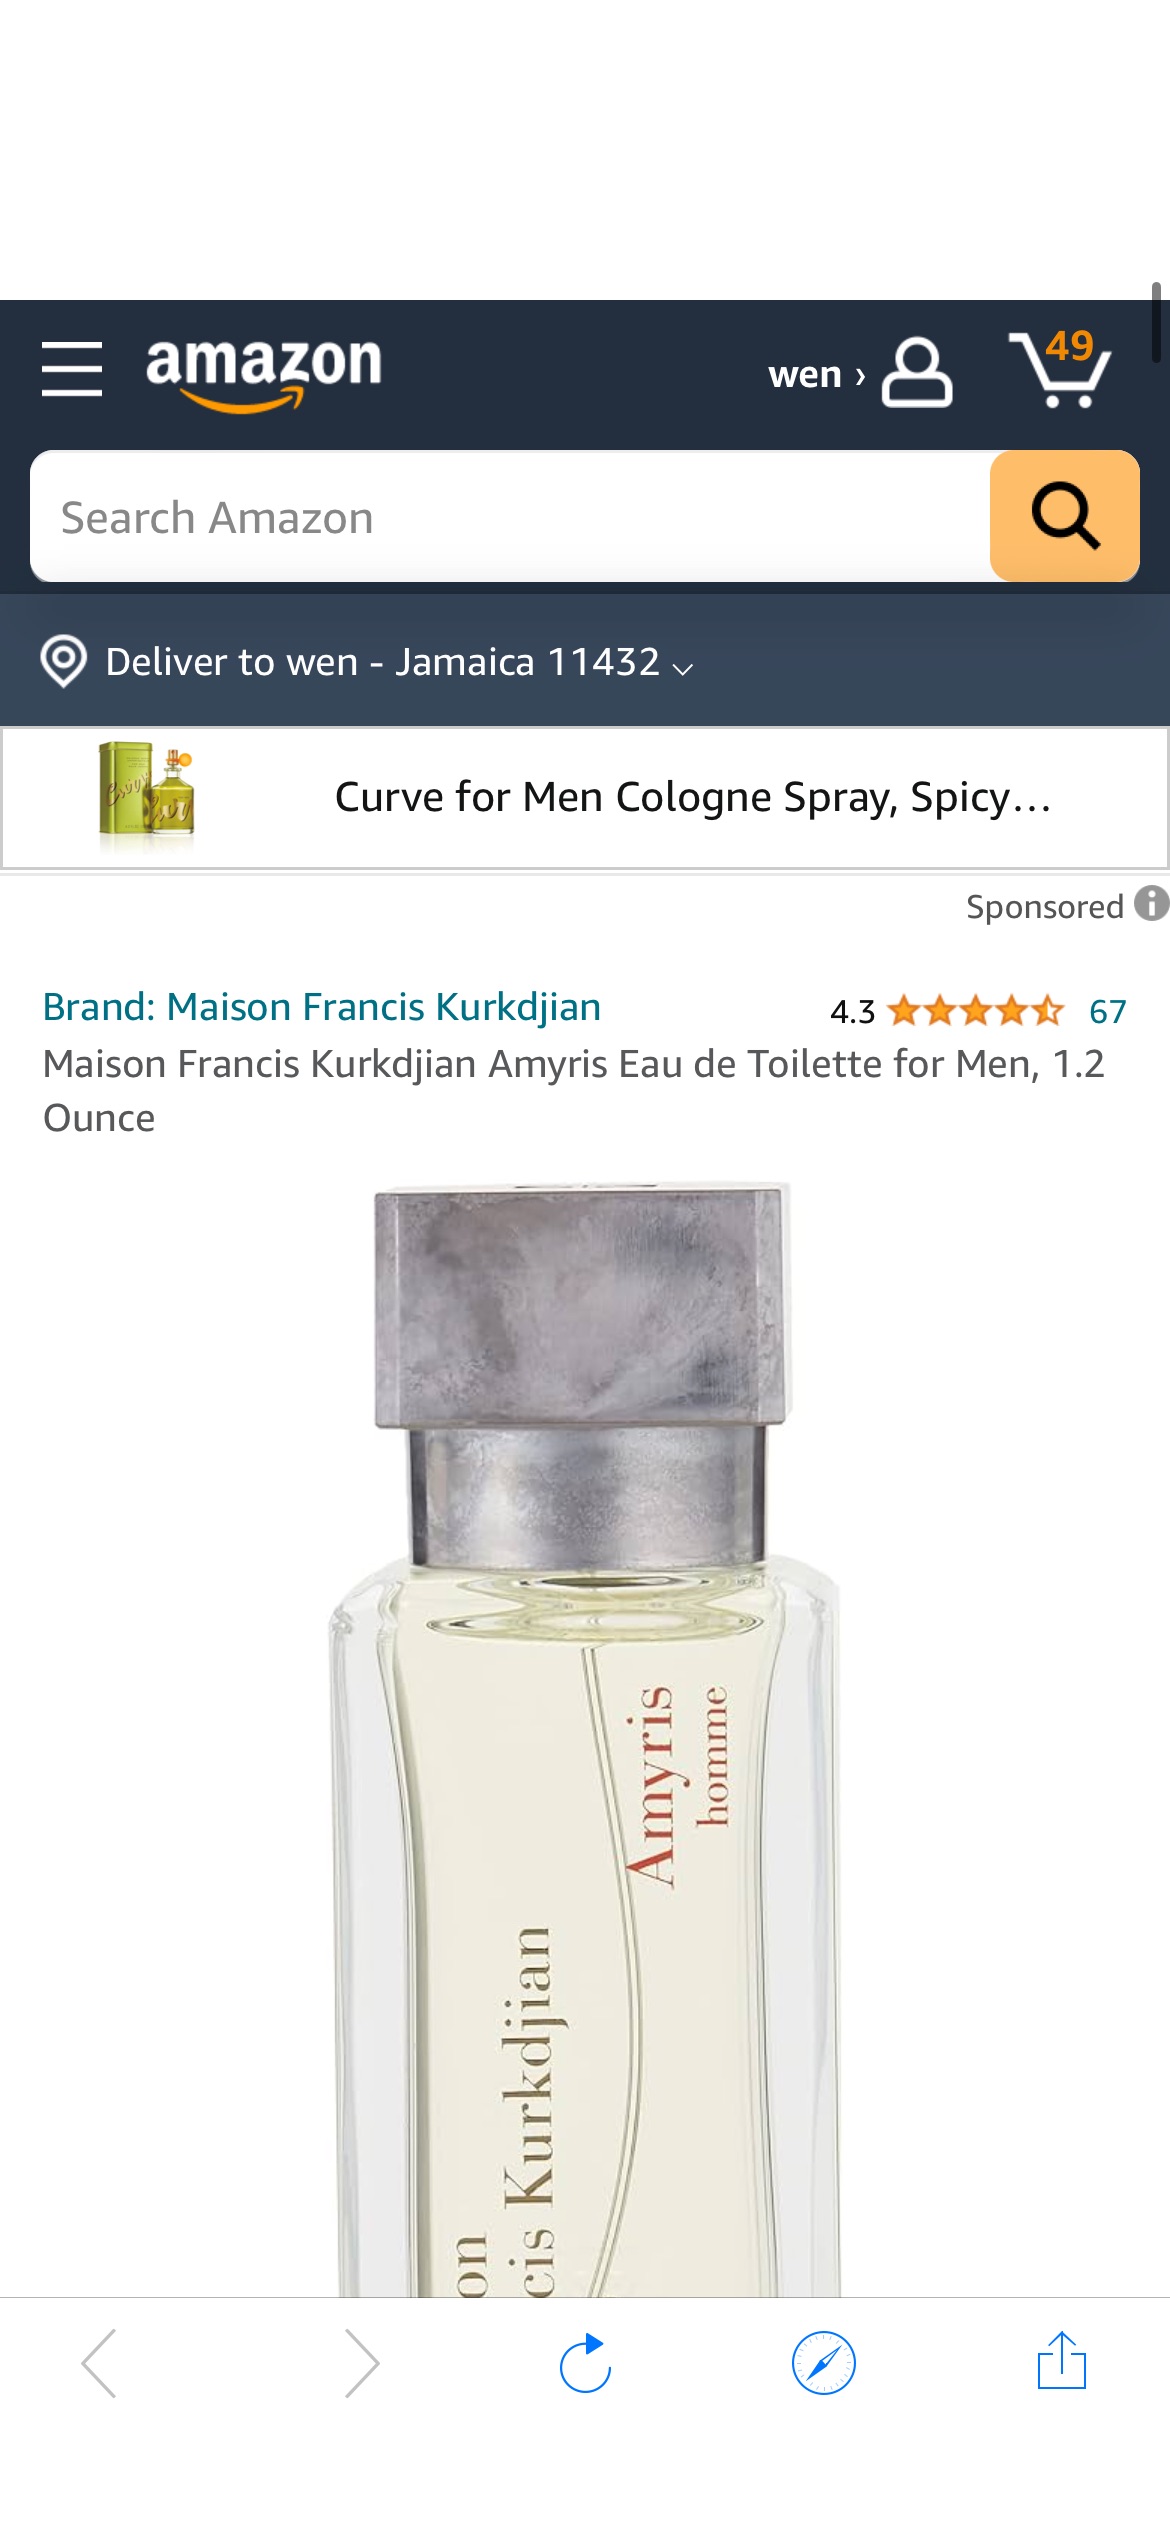 Amazon.com : Maison Francis Kurkdjian Amyris Eau de Toilette for Men, 1.2 Ounce : Beauty & Personal Care